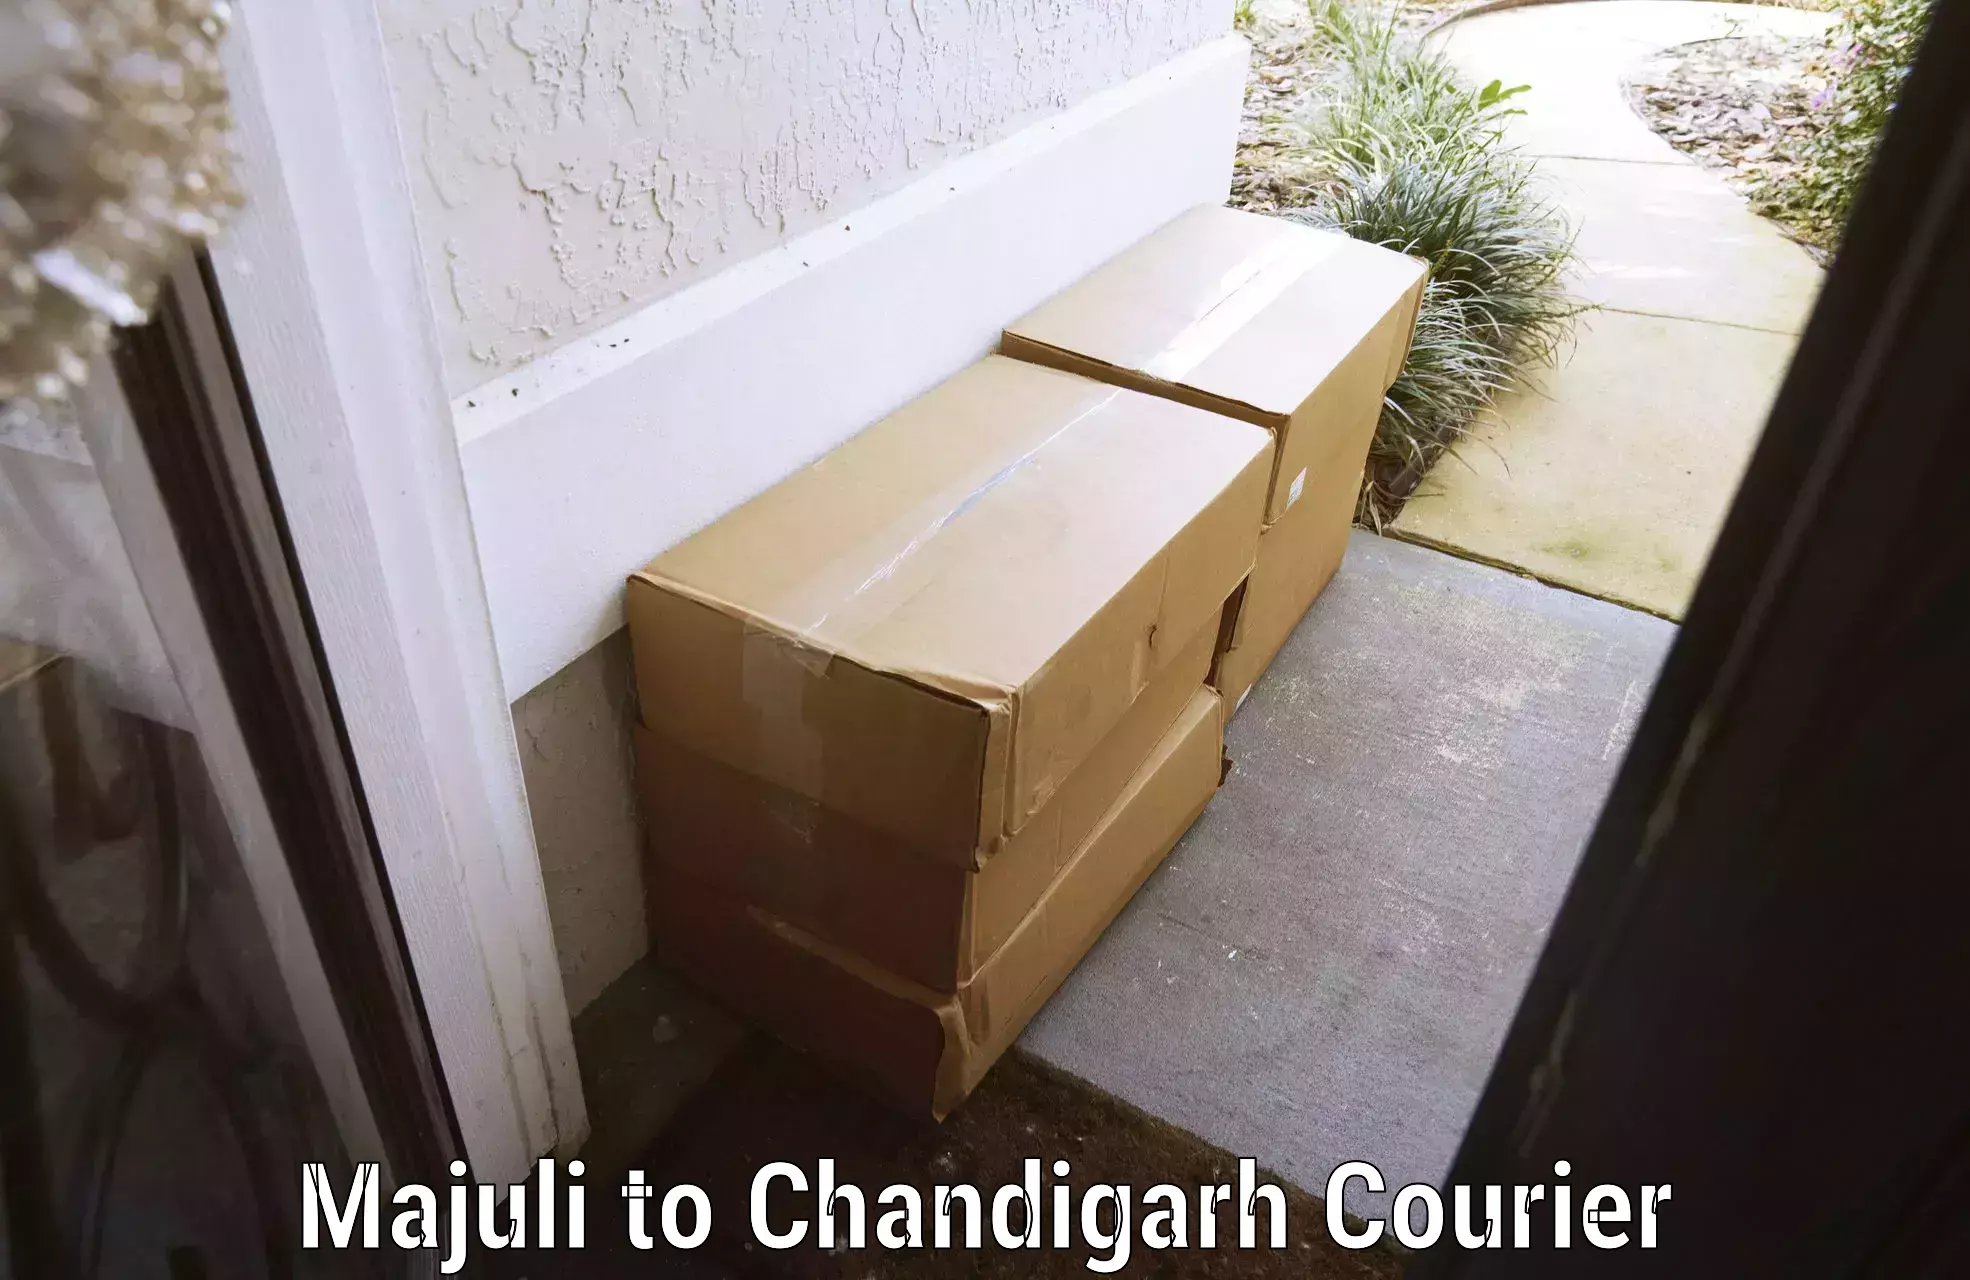 Rural baggage transport Majuli to Chandigarh